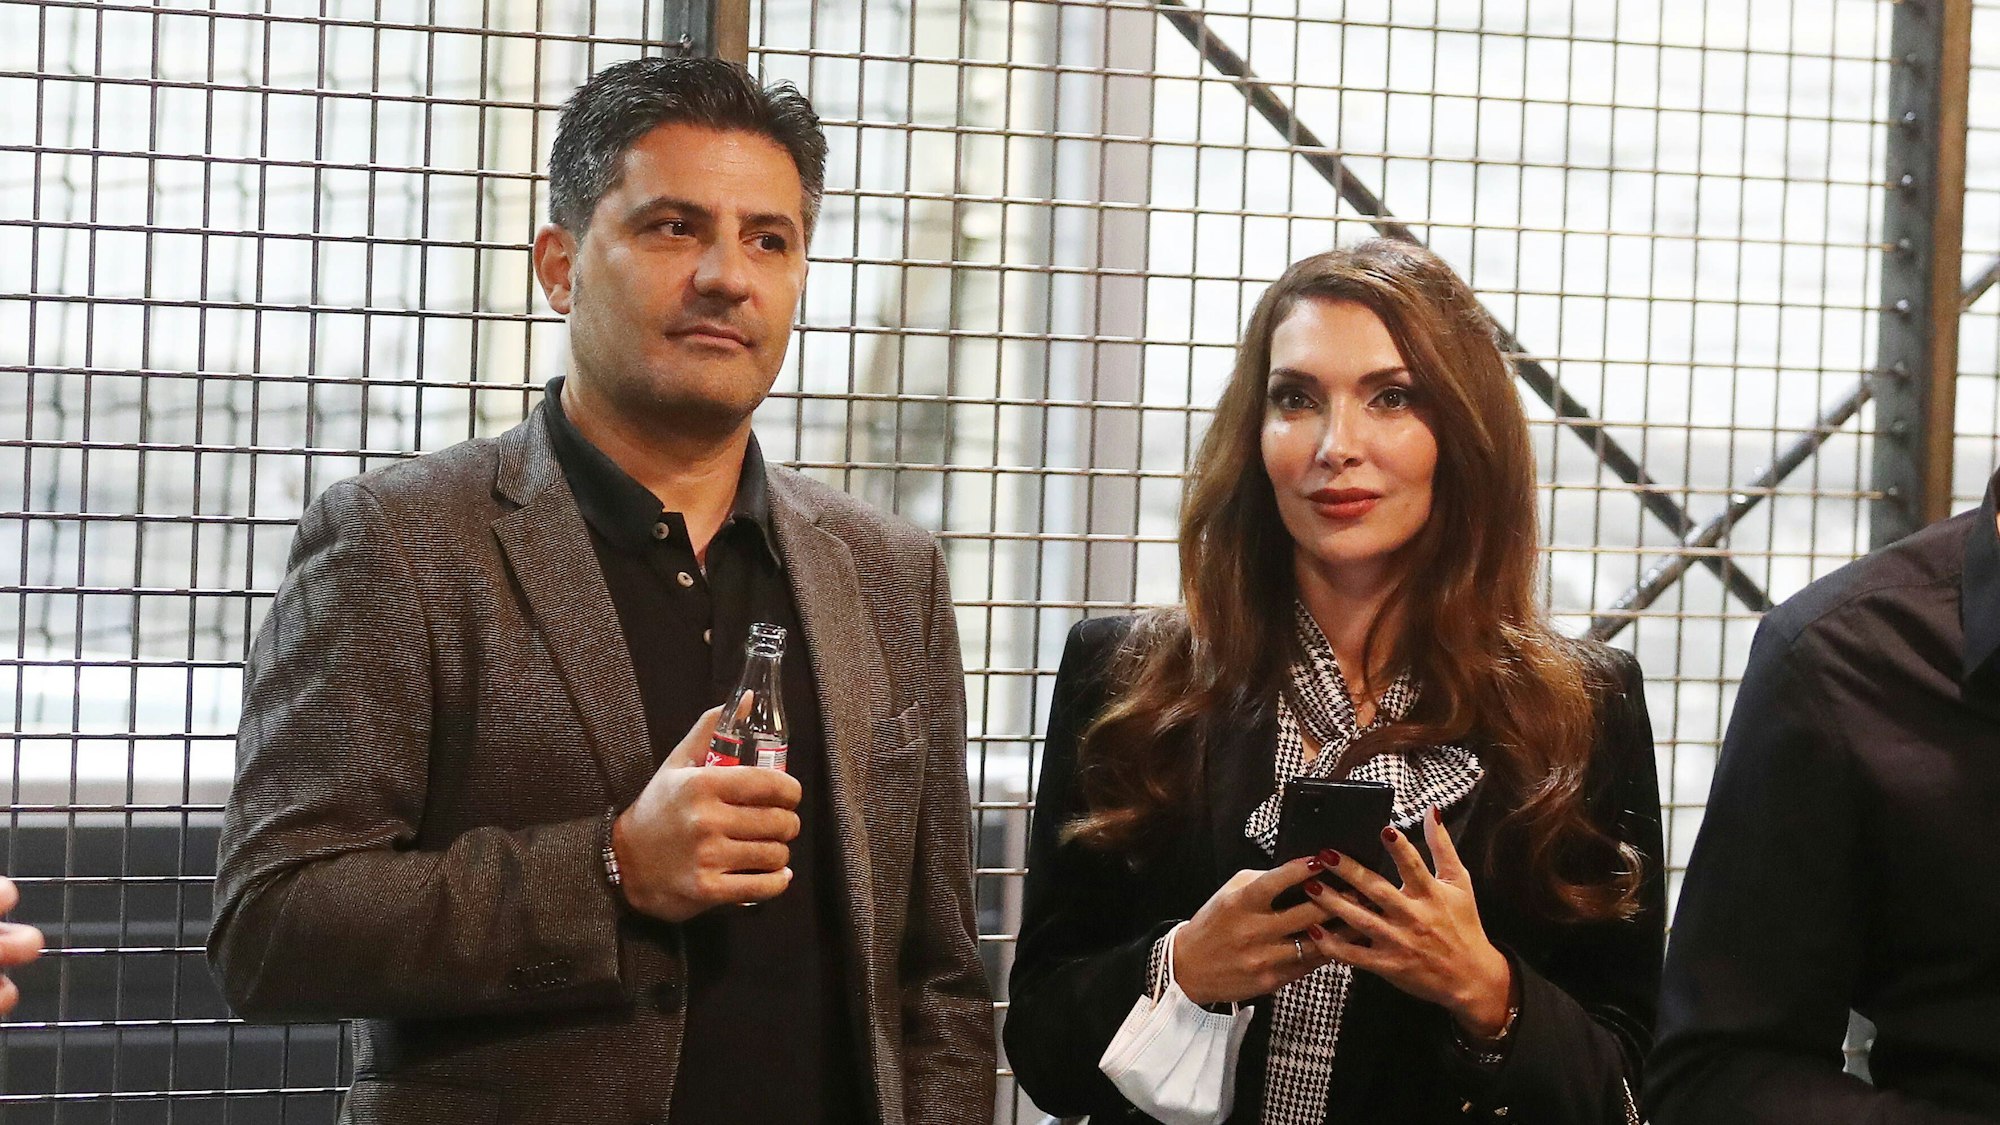 Babak Rafati steht neben seiner Frau Rouja. Er hält eine Cola-Flasche in der Hand, sie ihr Smartphone.